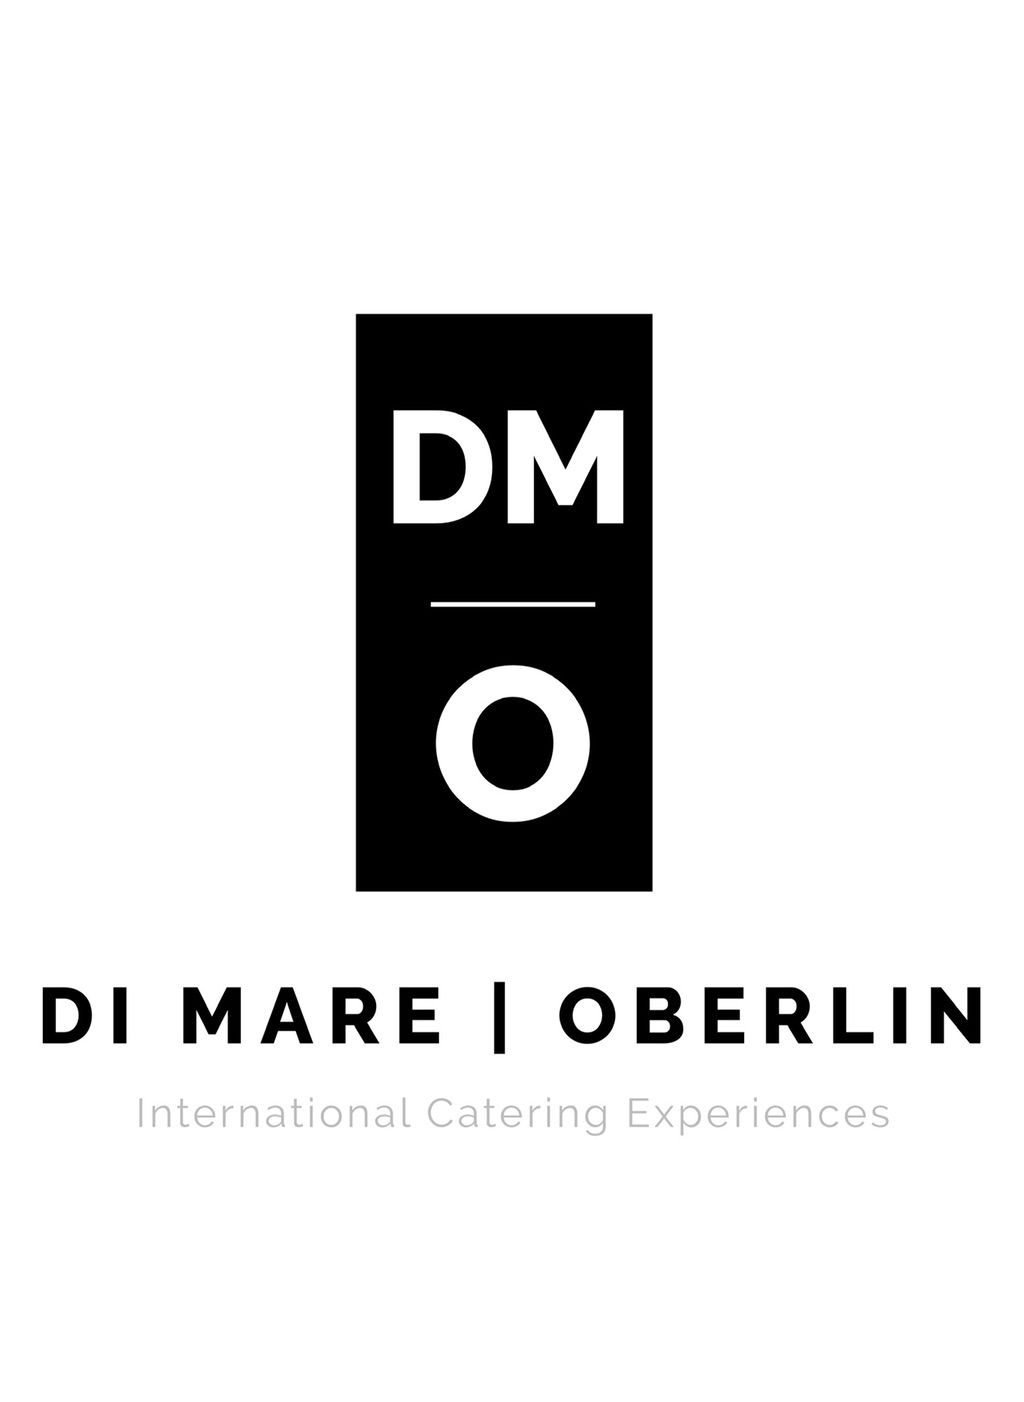 Di Mare | Oberlin catering